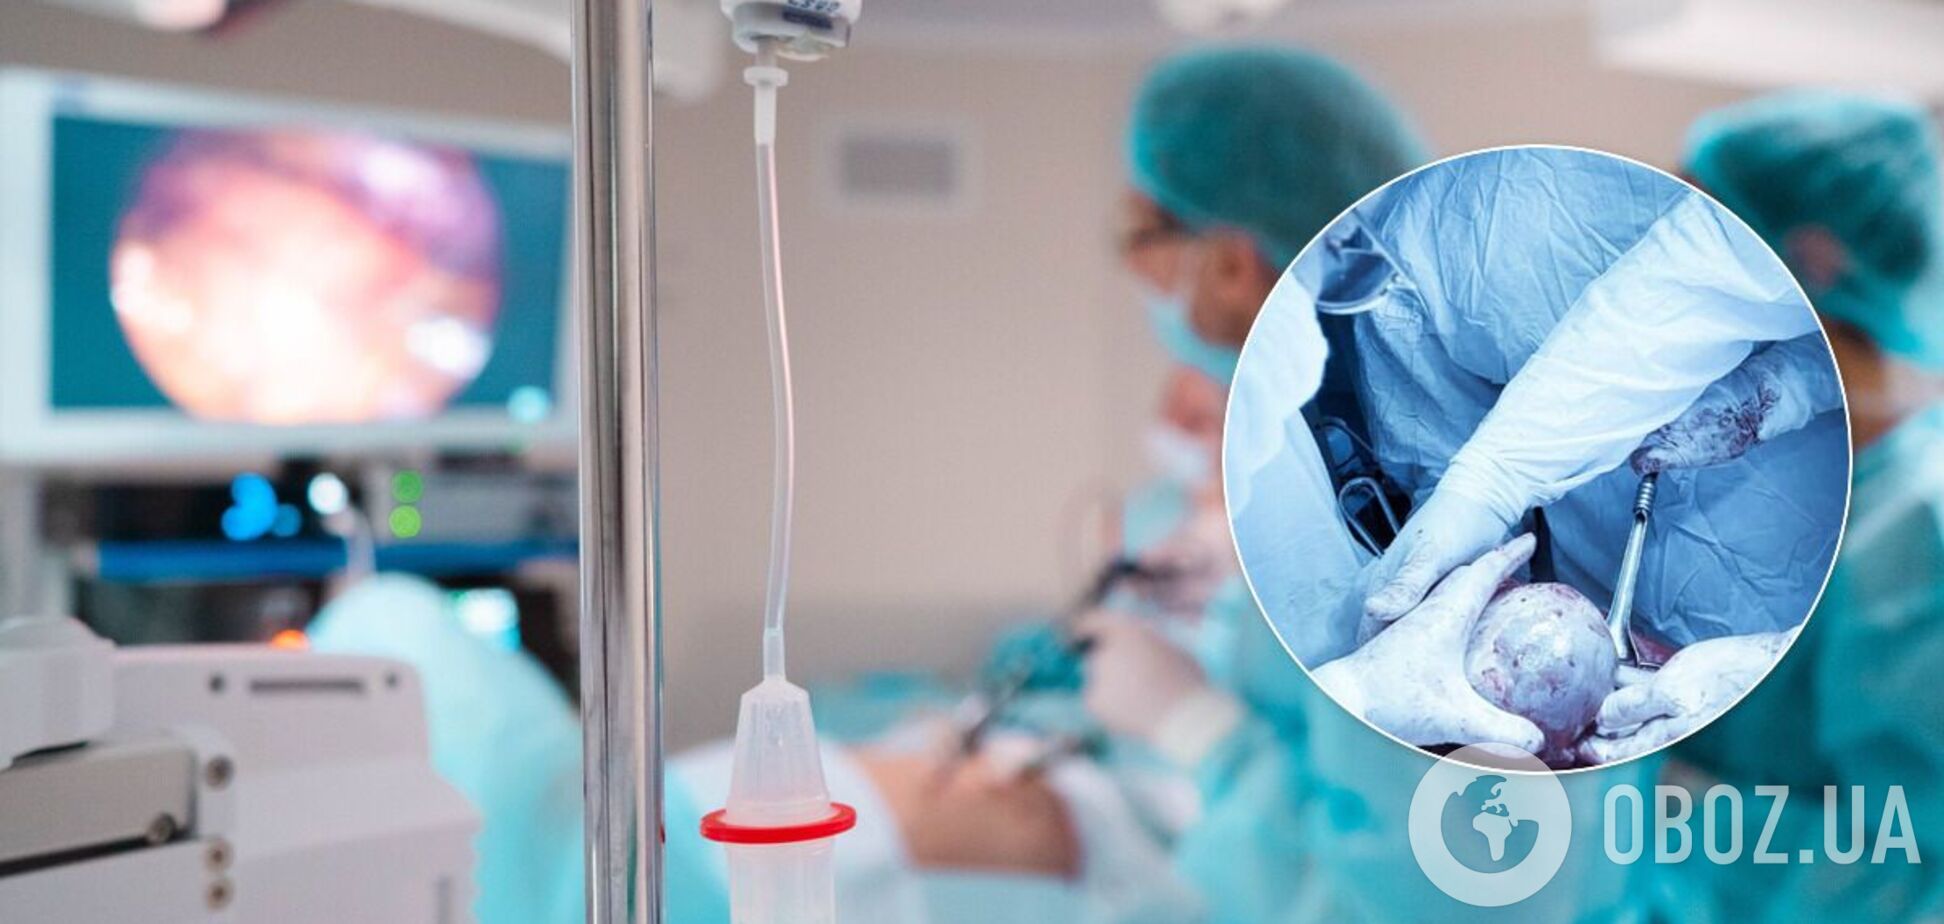 Во Львове 56-летней женщине удалили полуторакилограммовую кисту с паразитами. Фото